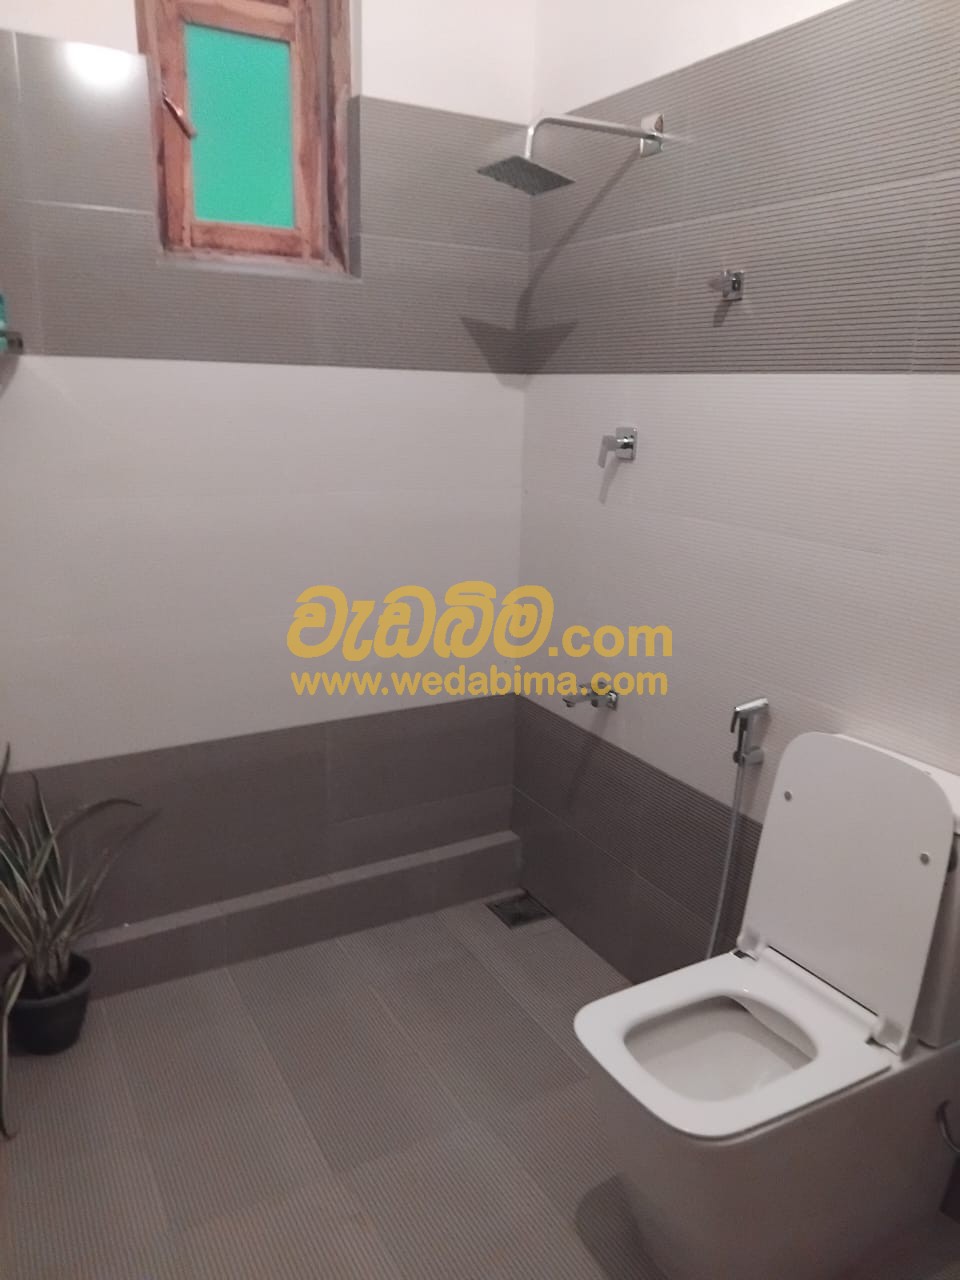 Bathroom Tilling Contractors - Kandy